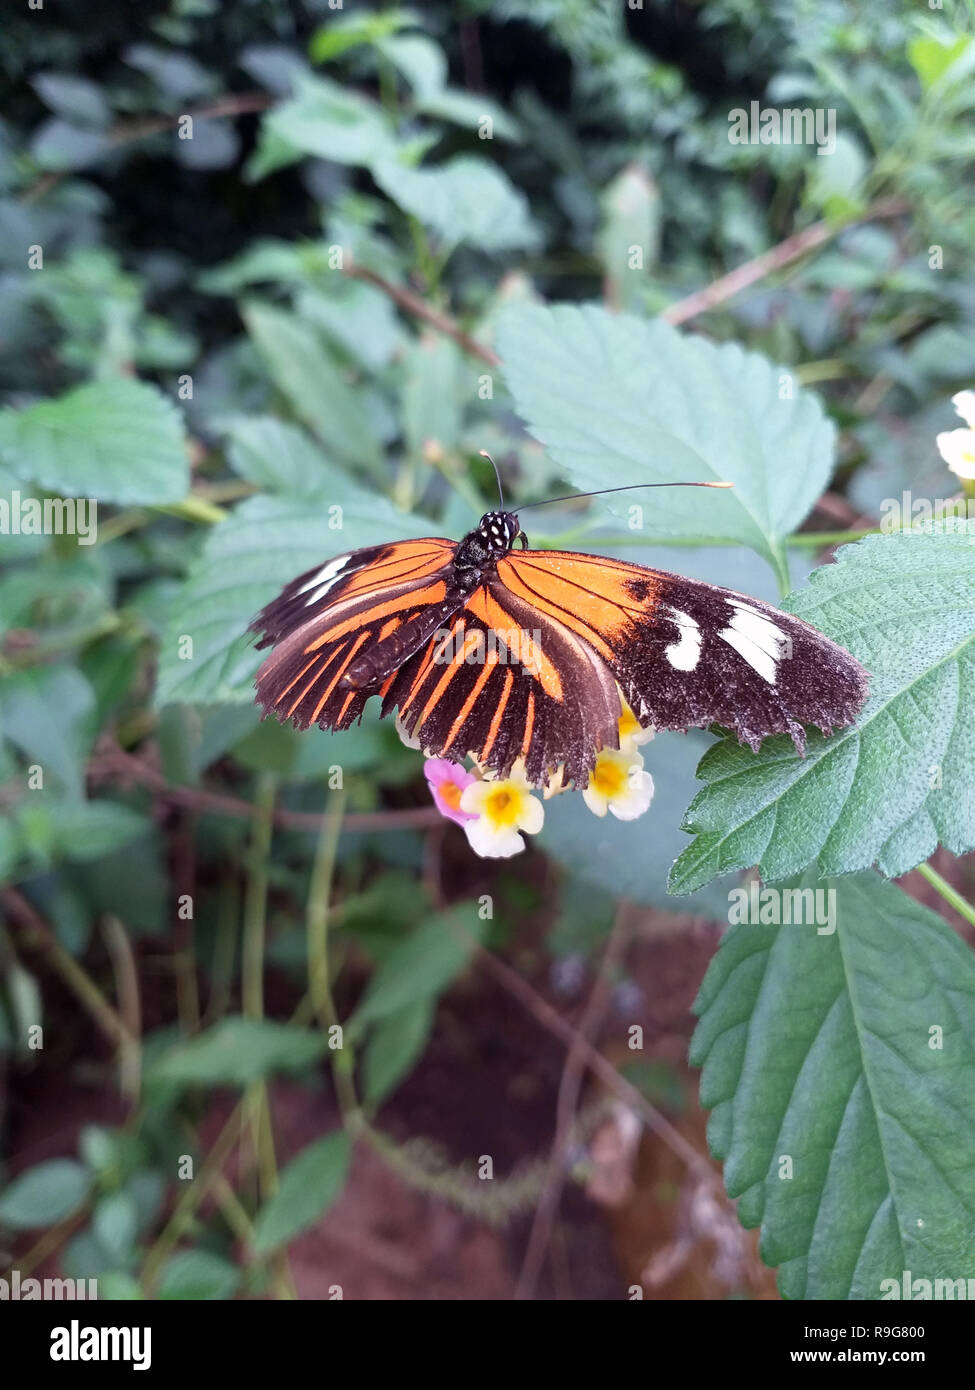 Monarch, Danaus plexippus, butterfly nella natura habitat. Insetti di Nizza dal Messico. Butterfly nella foresta verde. Foto Stock